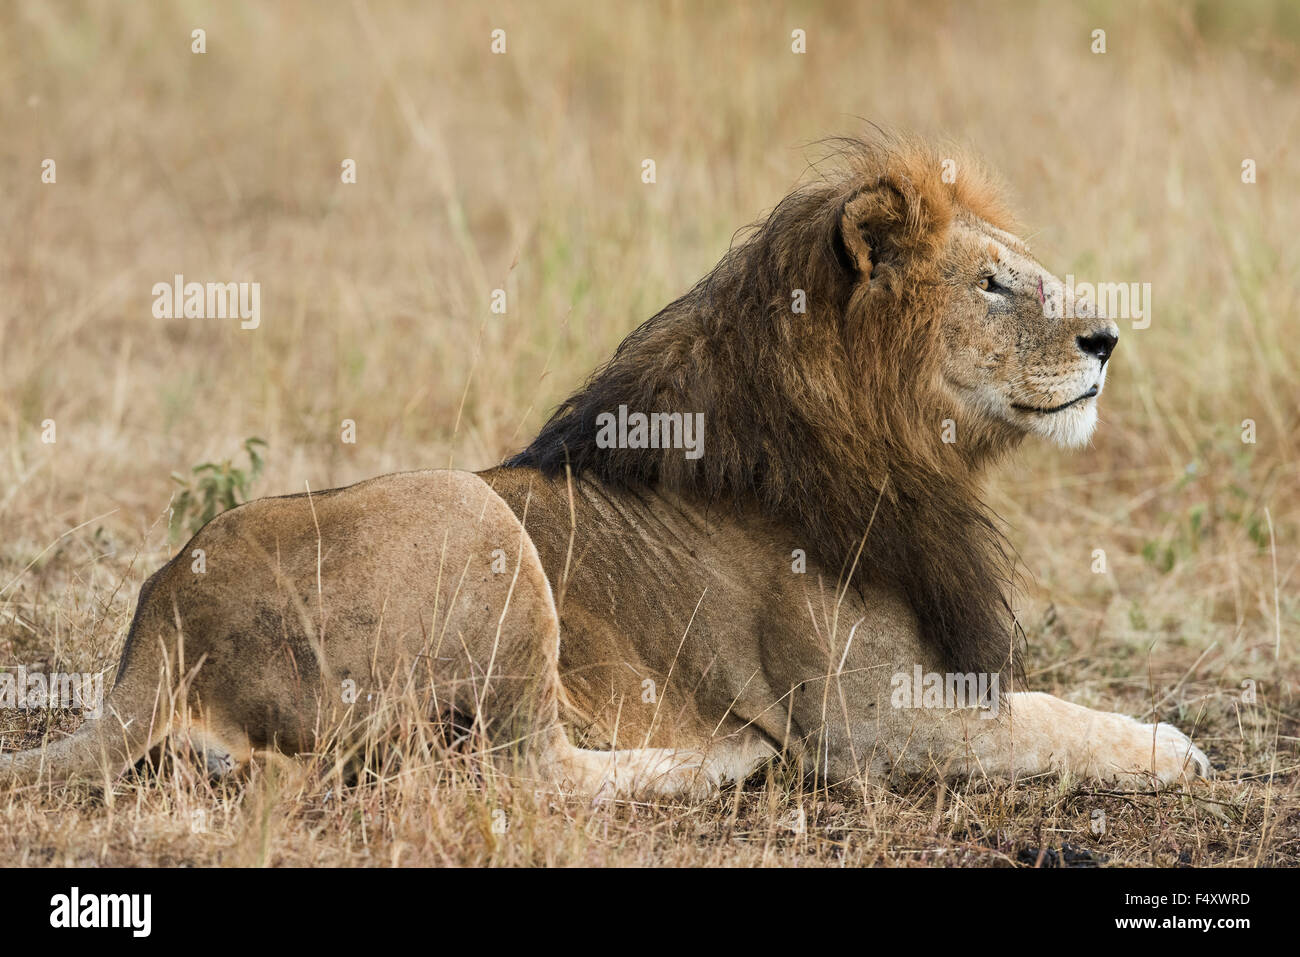 León (Panthera leo), macho con melena húmeda tumbado en la hierba, el Masai Mara, Condado de Narok, Kenia Foto de stock